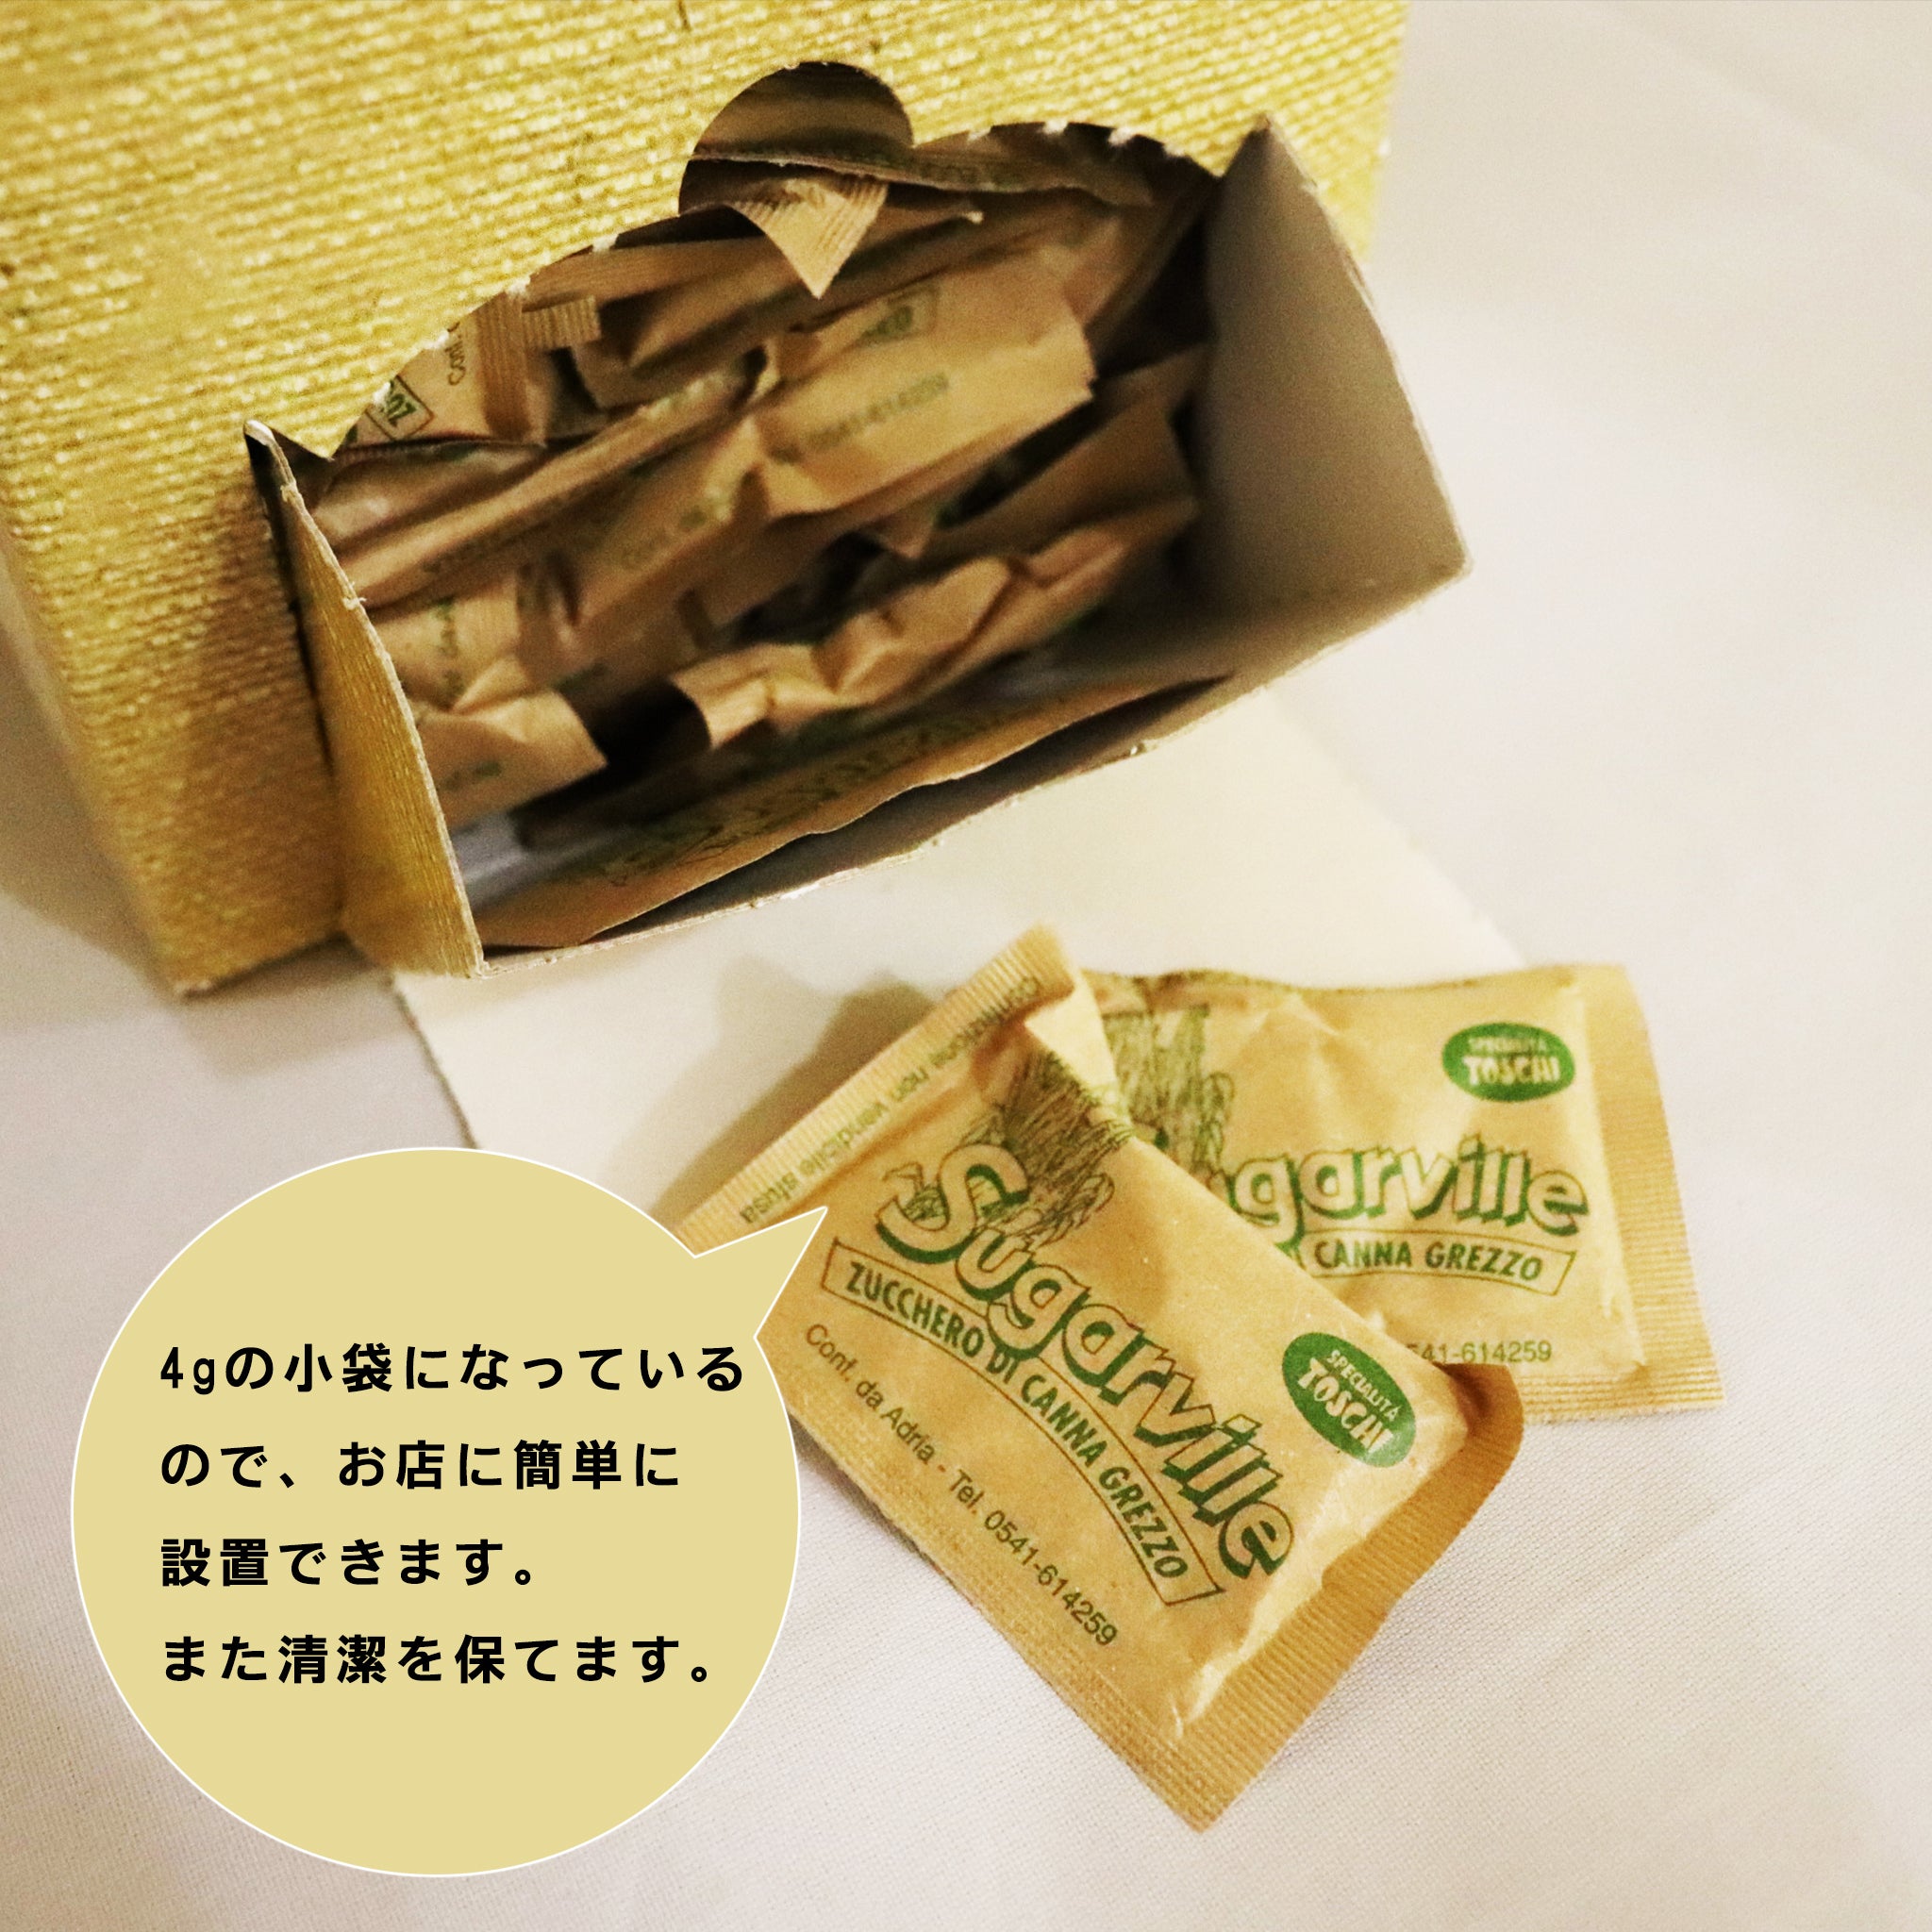 【トスキ社】シュガヴィッレ きび砂糖 750g×2箱セット - 嶋ノ屋　オンラインストア